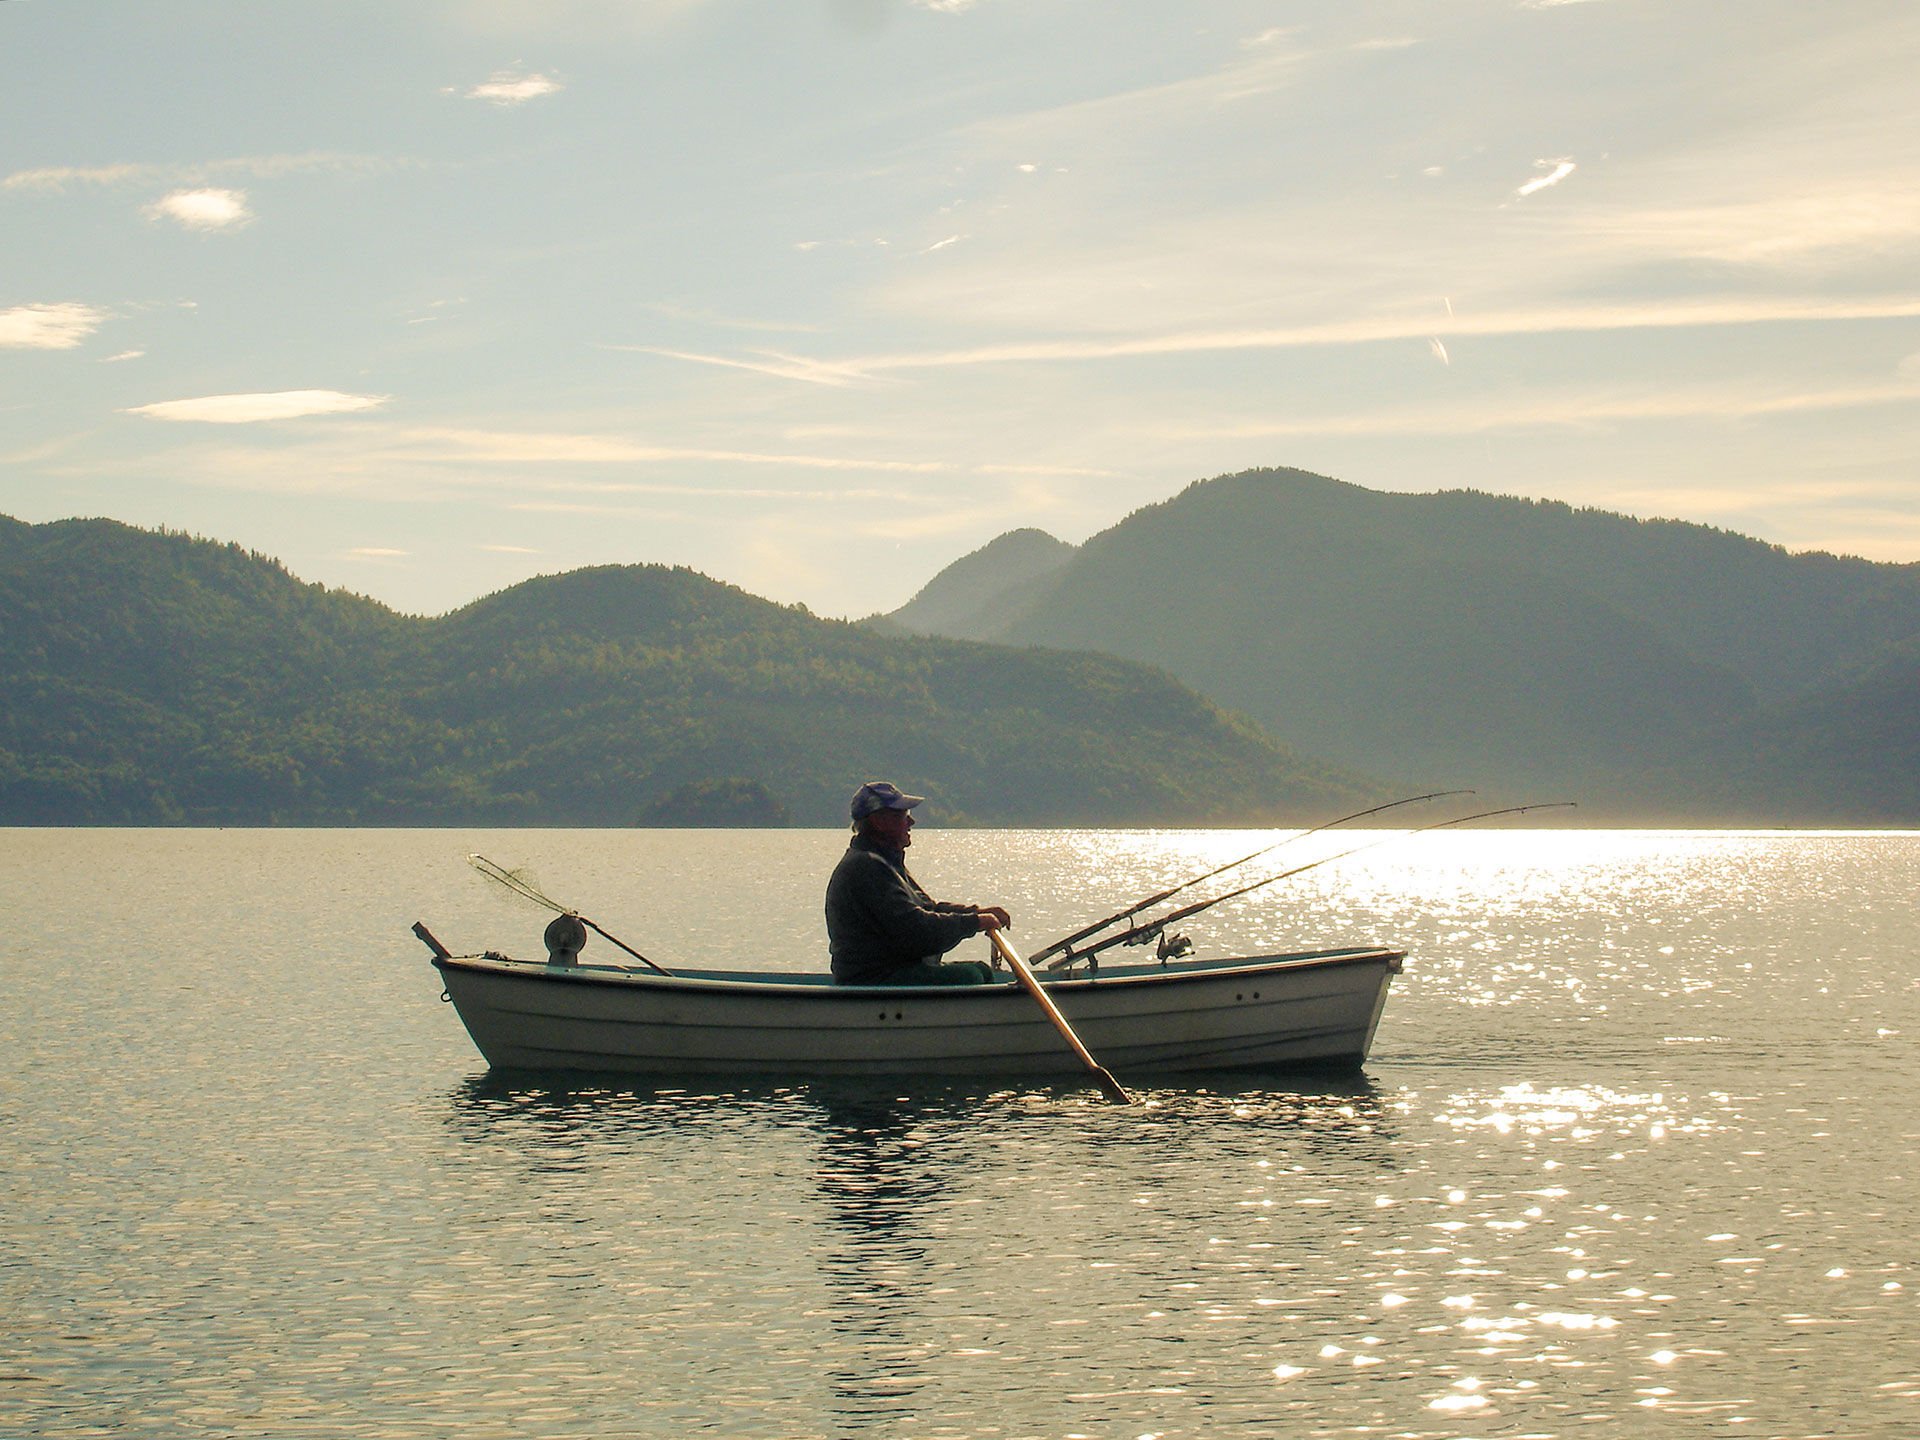  Schleppen mit dem Ruderboot vor romantischer Kulisse: Motorboote sind auf dem Walchensee nicht erlaubt.  